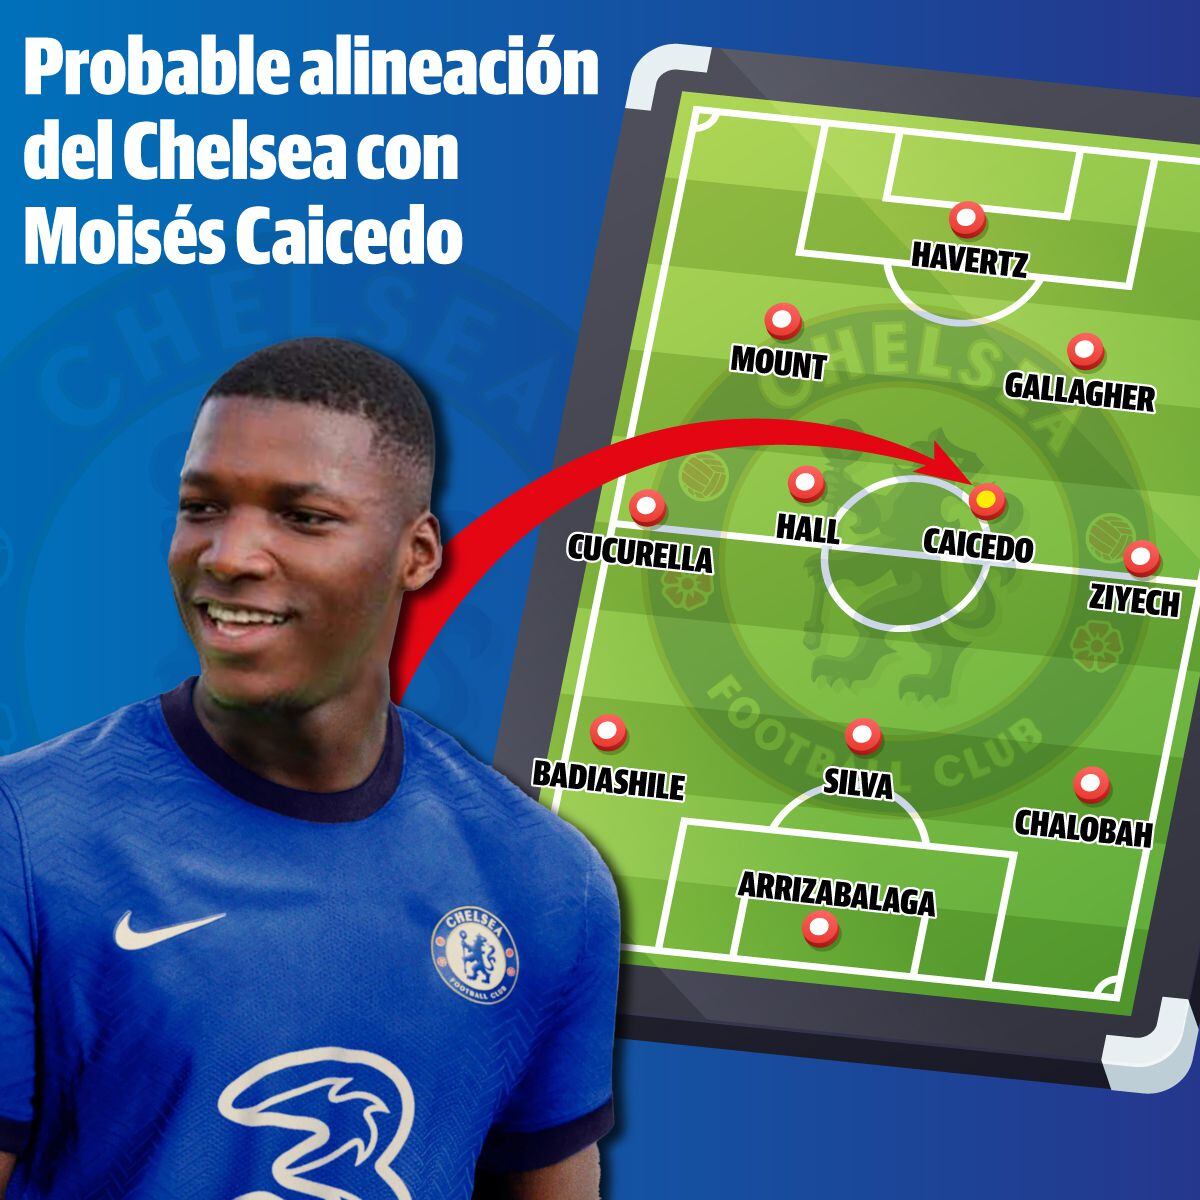 Las opciones de Moisés Caicedo y la agencia que lo representa se han reducido a nada más que una (el Chelsea).